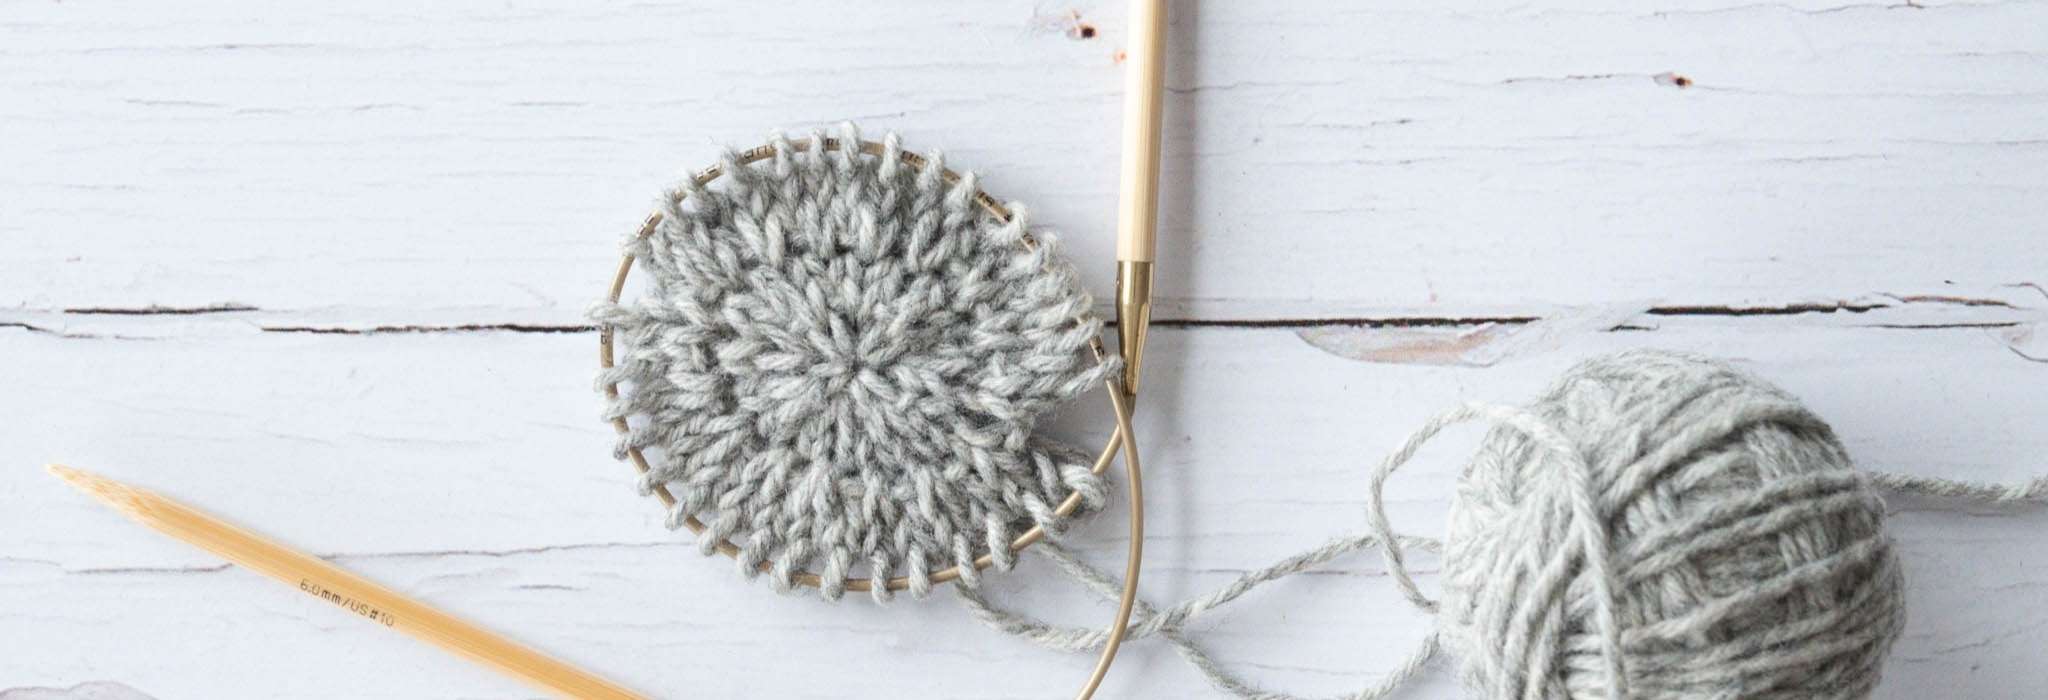 close up of a small circle of grey knitting